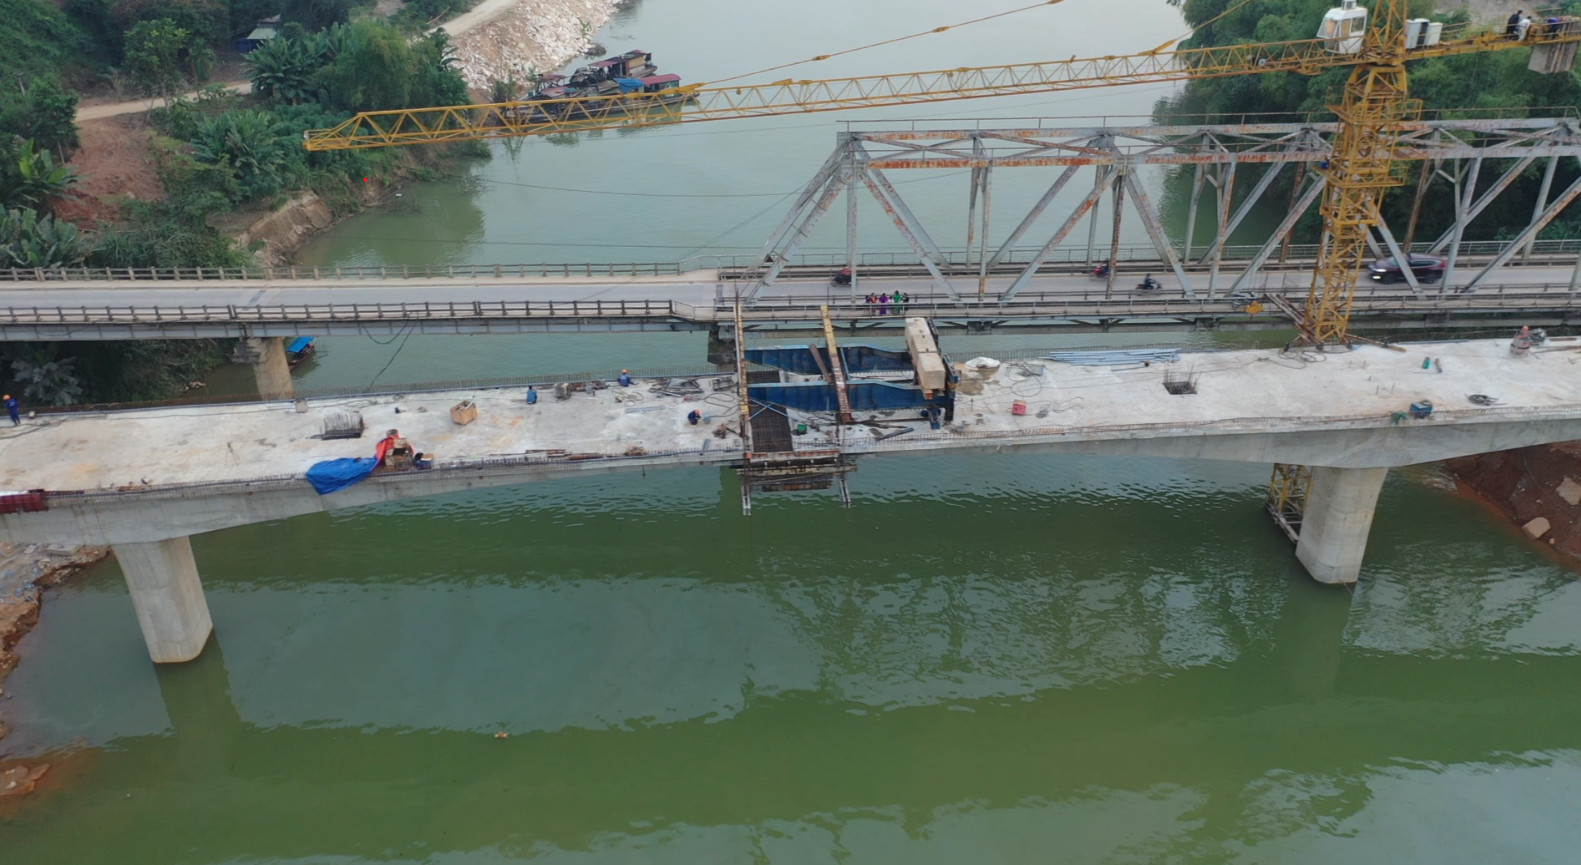 Hợp long cây cầu hơn 100 tỷ đồng bắc qua sông Chảy ở Yên Bái - Ảnh 3.